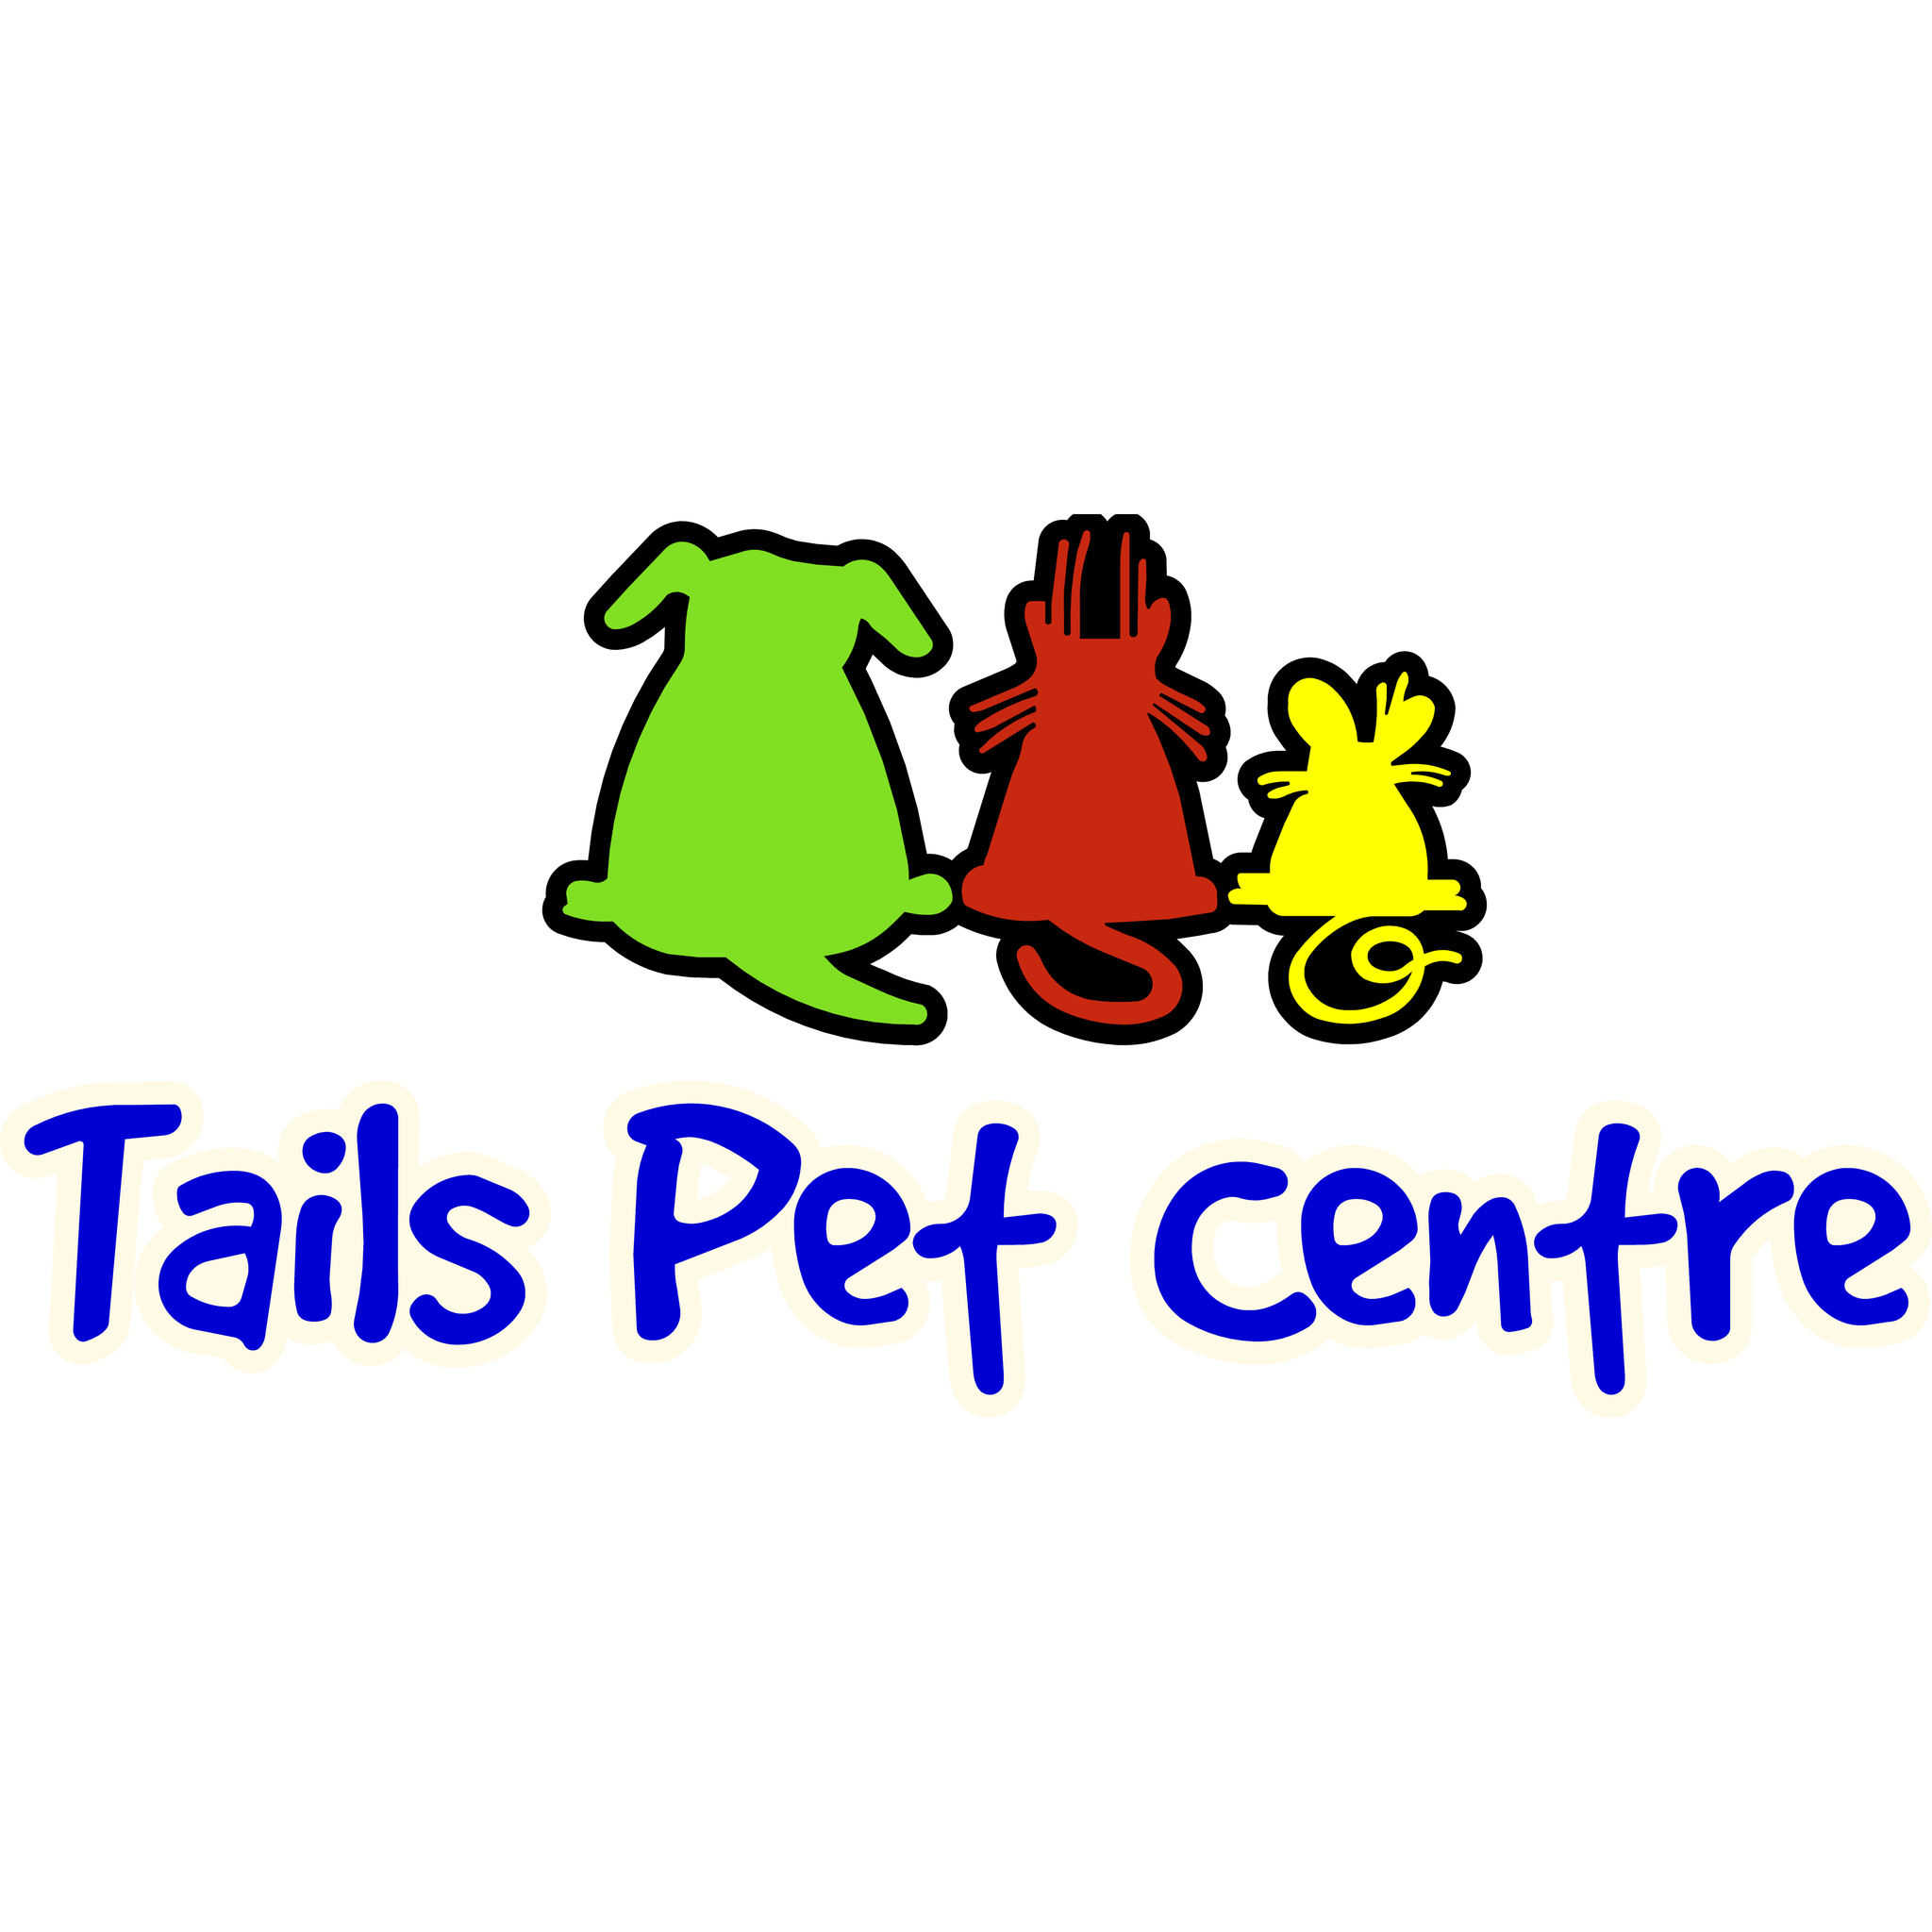 Your Local Pet Shop – Tails Pet Centre